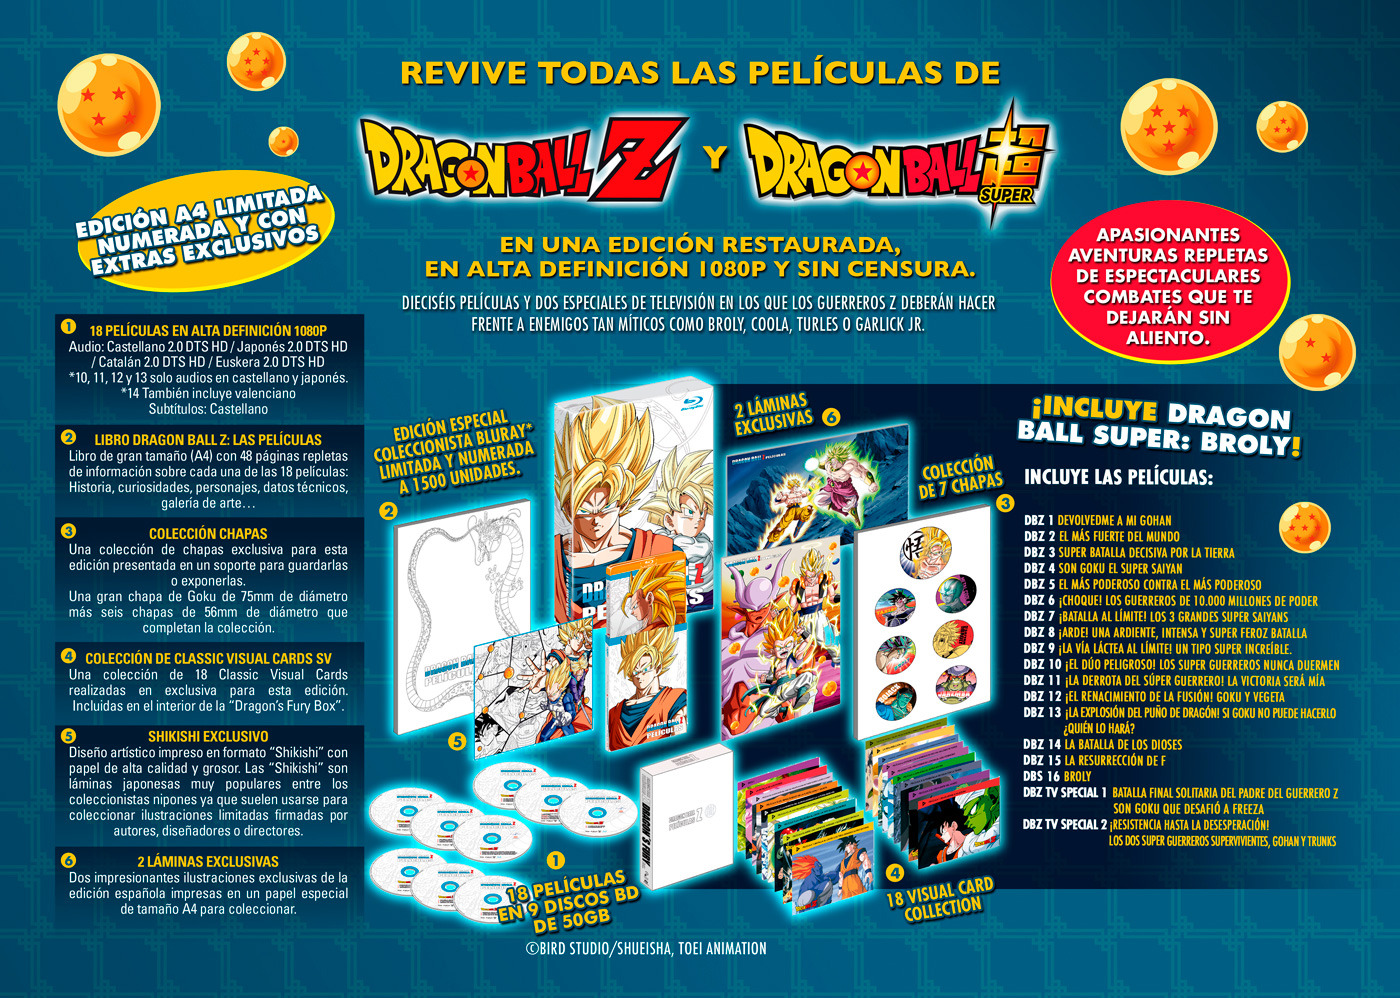 Dragon Ball Z llega entera en Blu-Ray a España y esta es su